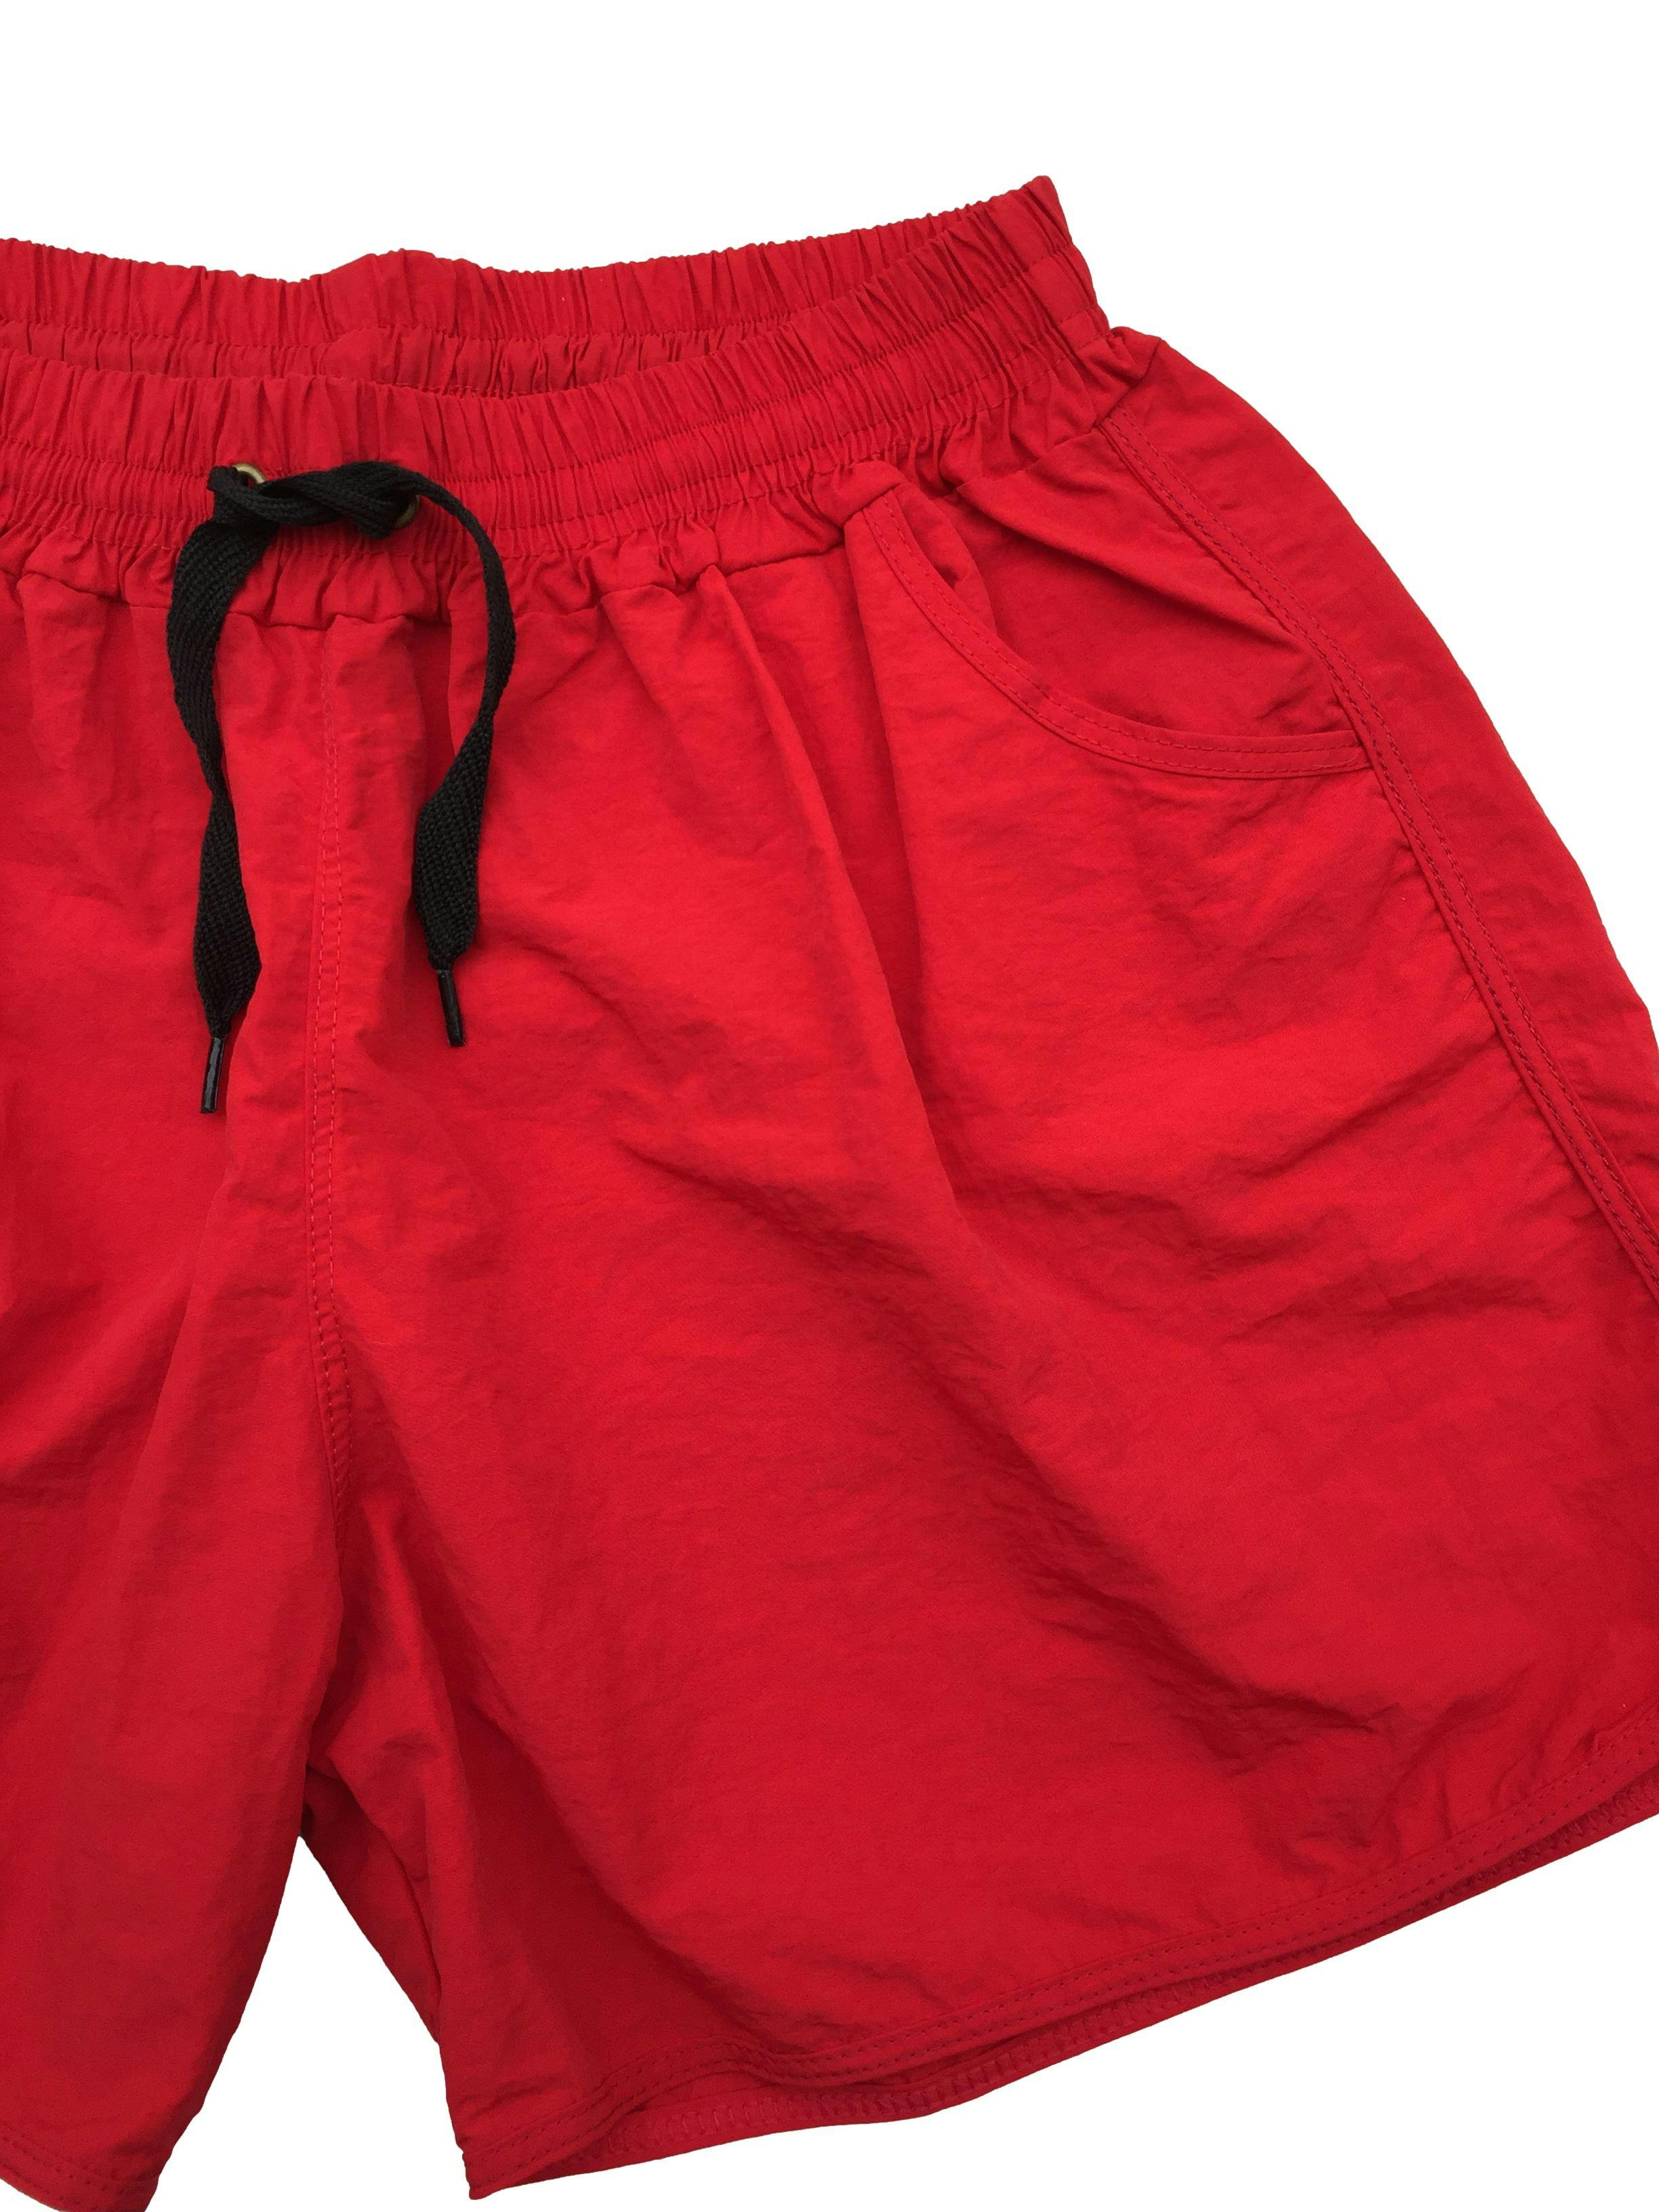 Short rojo de tela impermeable, pretina elástica con cordones y bolsillos. Cintura 64cm sin estirar, Tiro 27cm Largo 33cm.